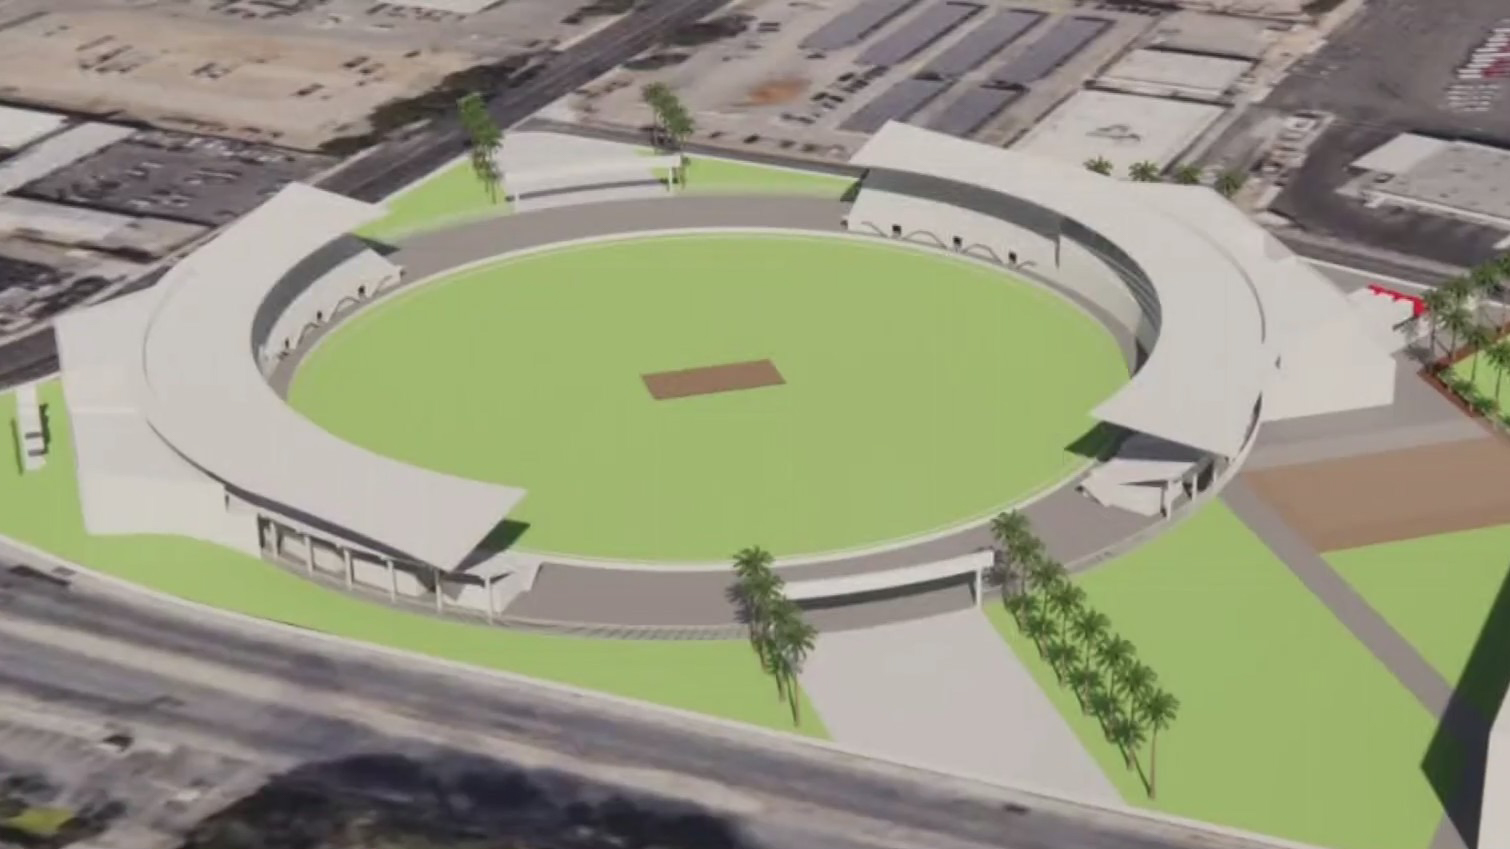 Future Santa Clara County Cricket Stadium, preliminary design by HKS Architects